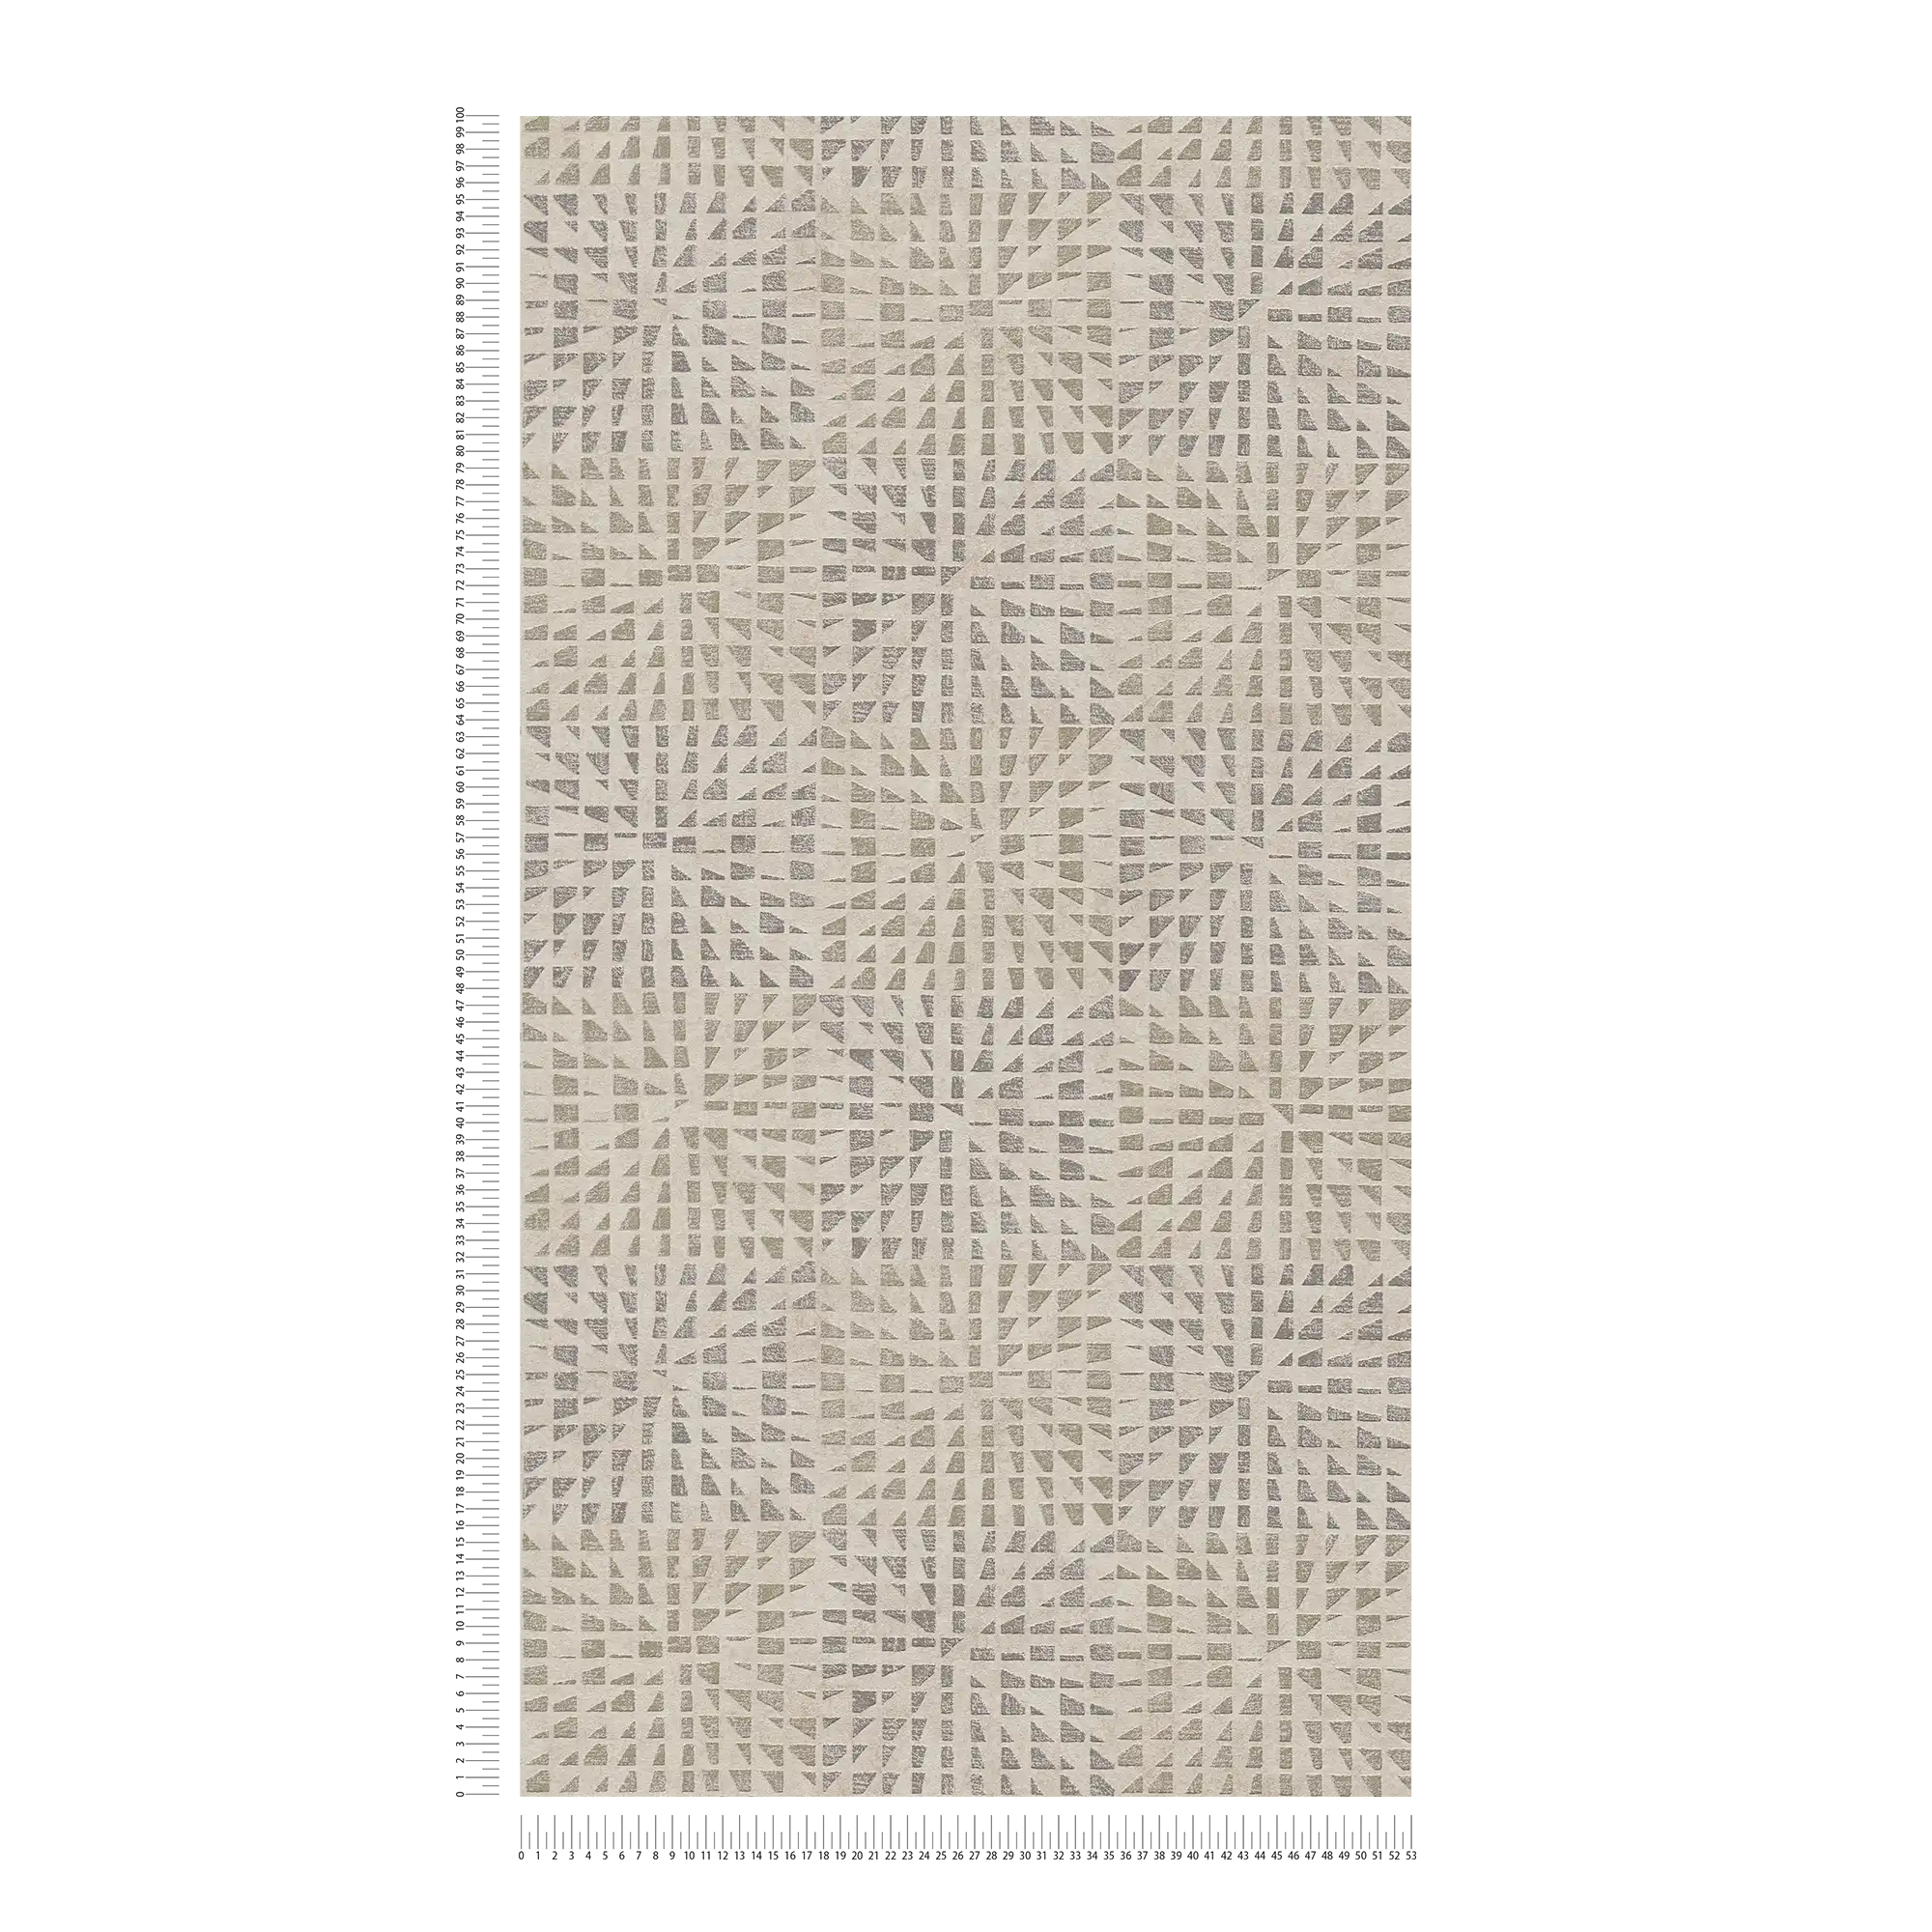             Ethno behang met structuurpatroon & mozaïekeffect - grijs, beige
        